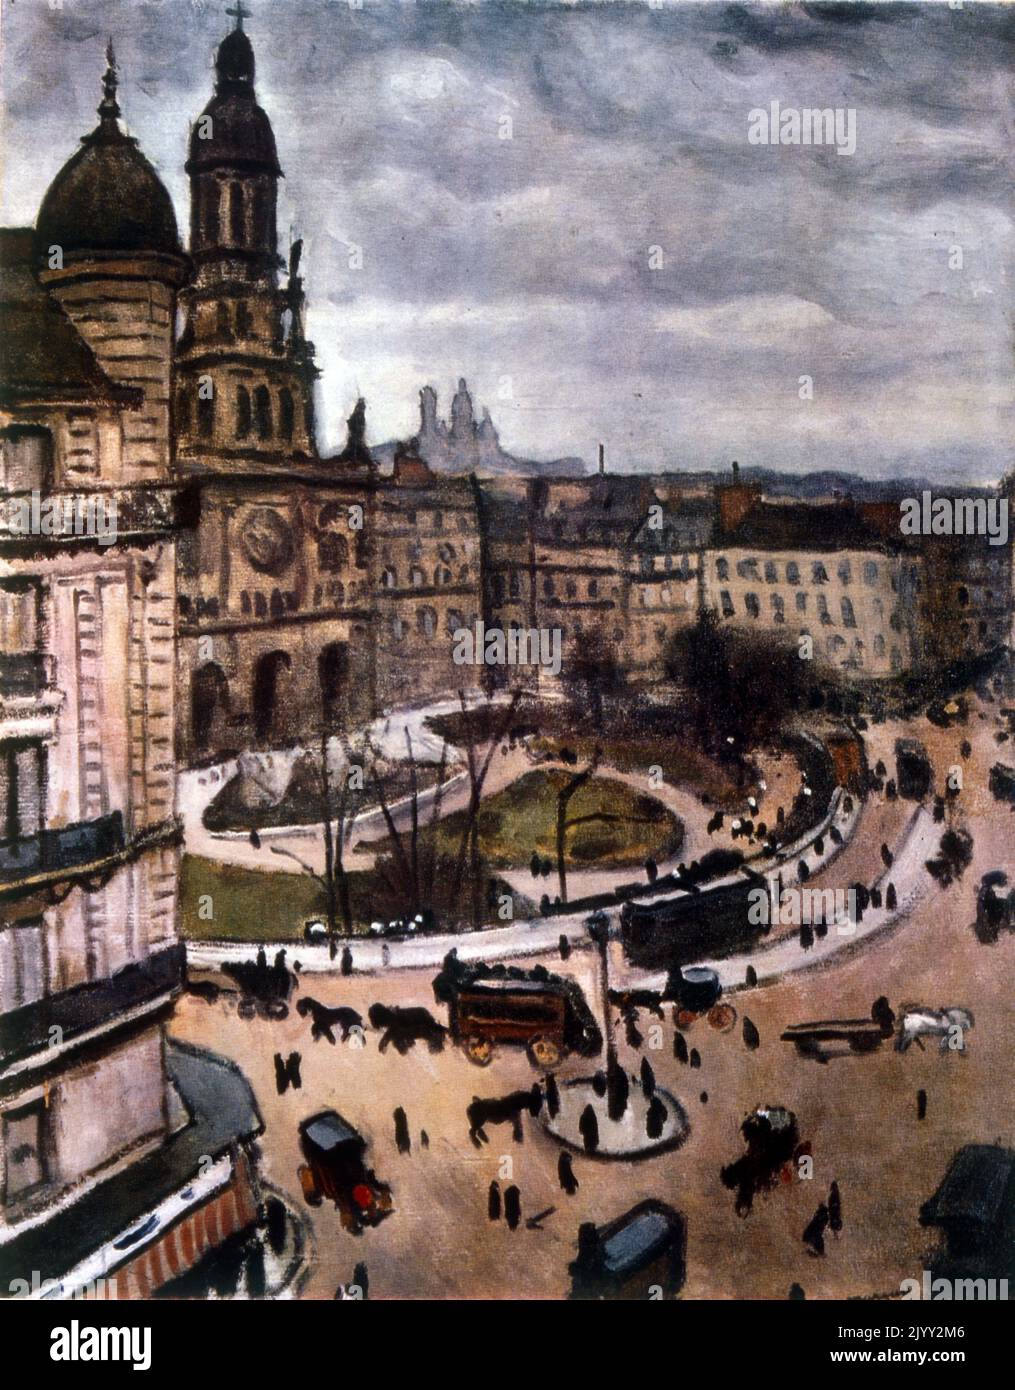 Place de la Trinite, Paris par Albert Marquet (1875 - 1947), peintre français, associé au mouvement Fauvist. Huile sur toile; vers 1911 Banque D'Images